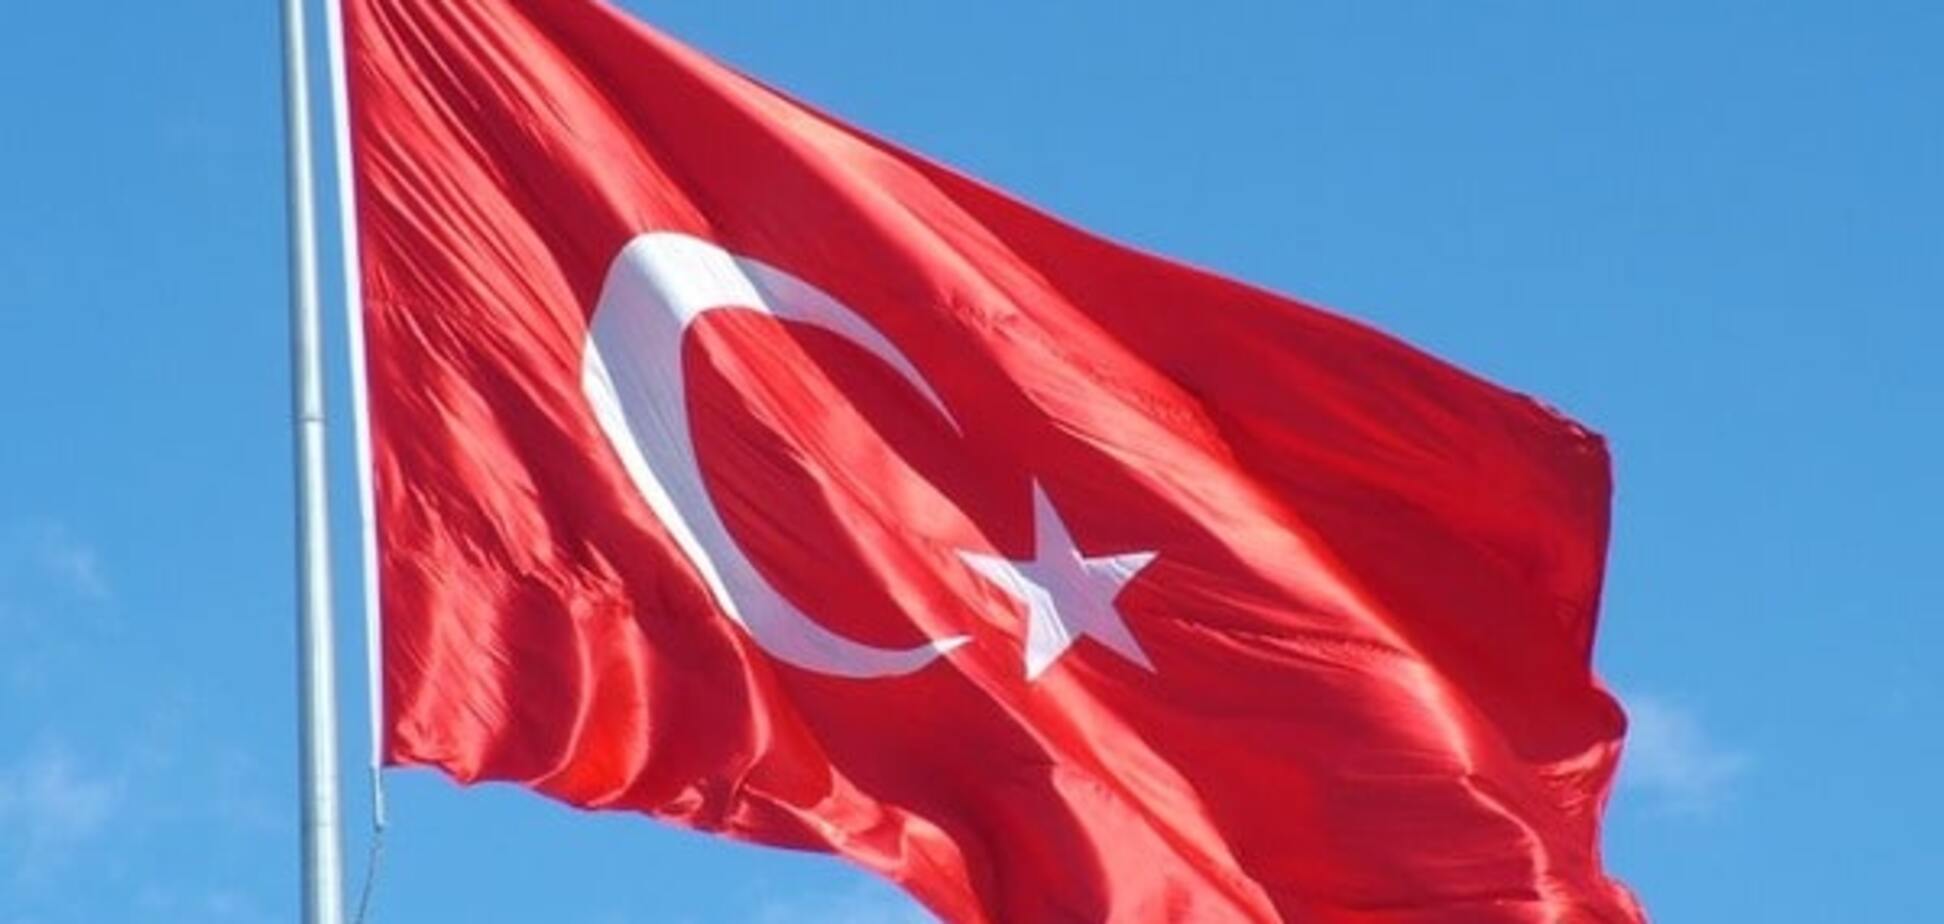 Друзі Путіна? Турецьке консульство в Греції закидали коктейлями Молотова